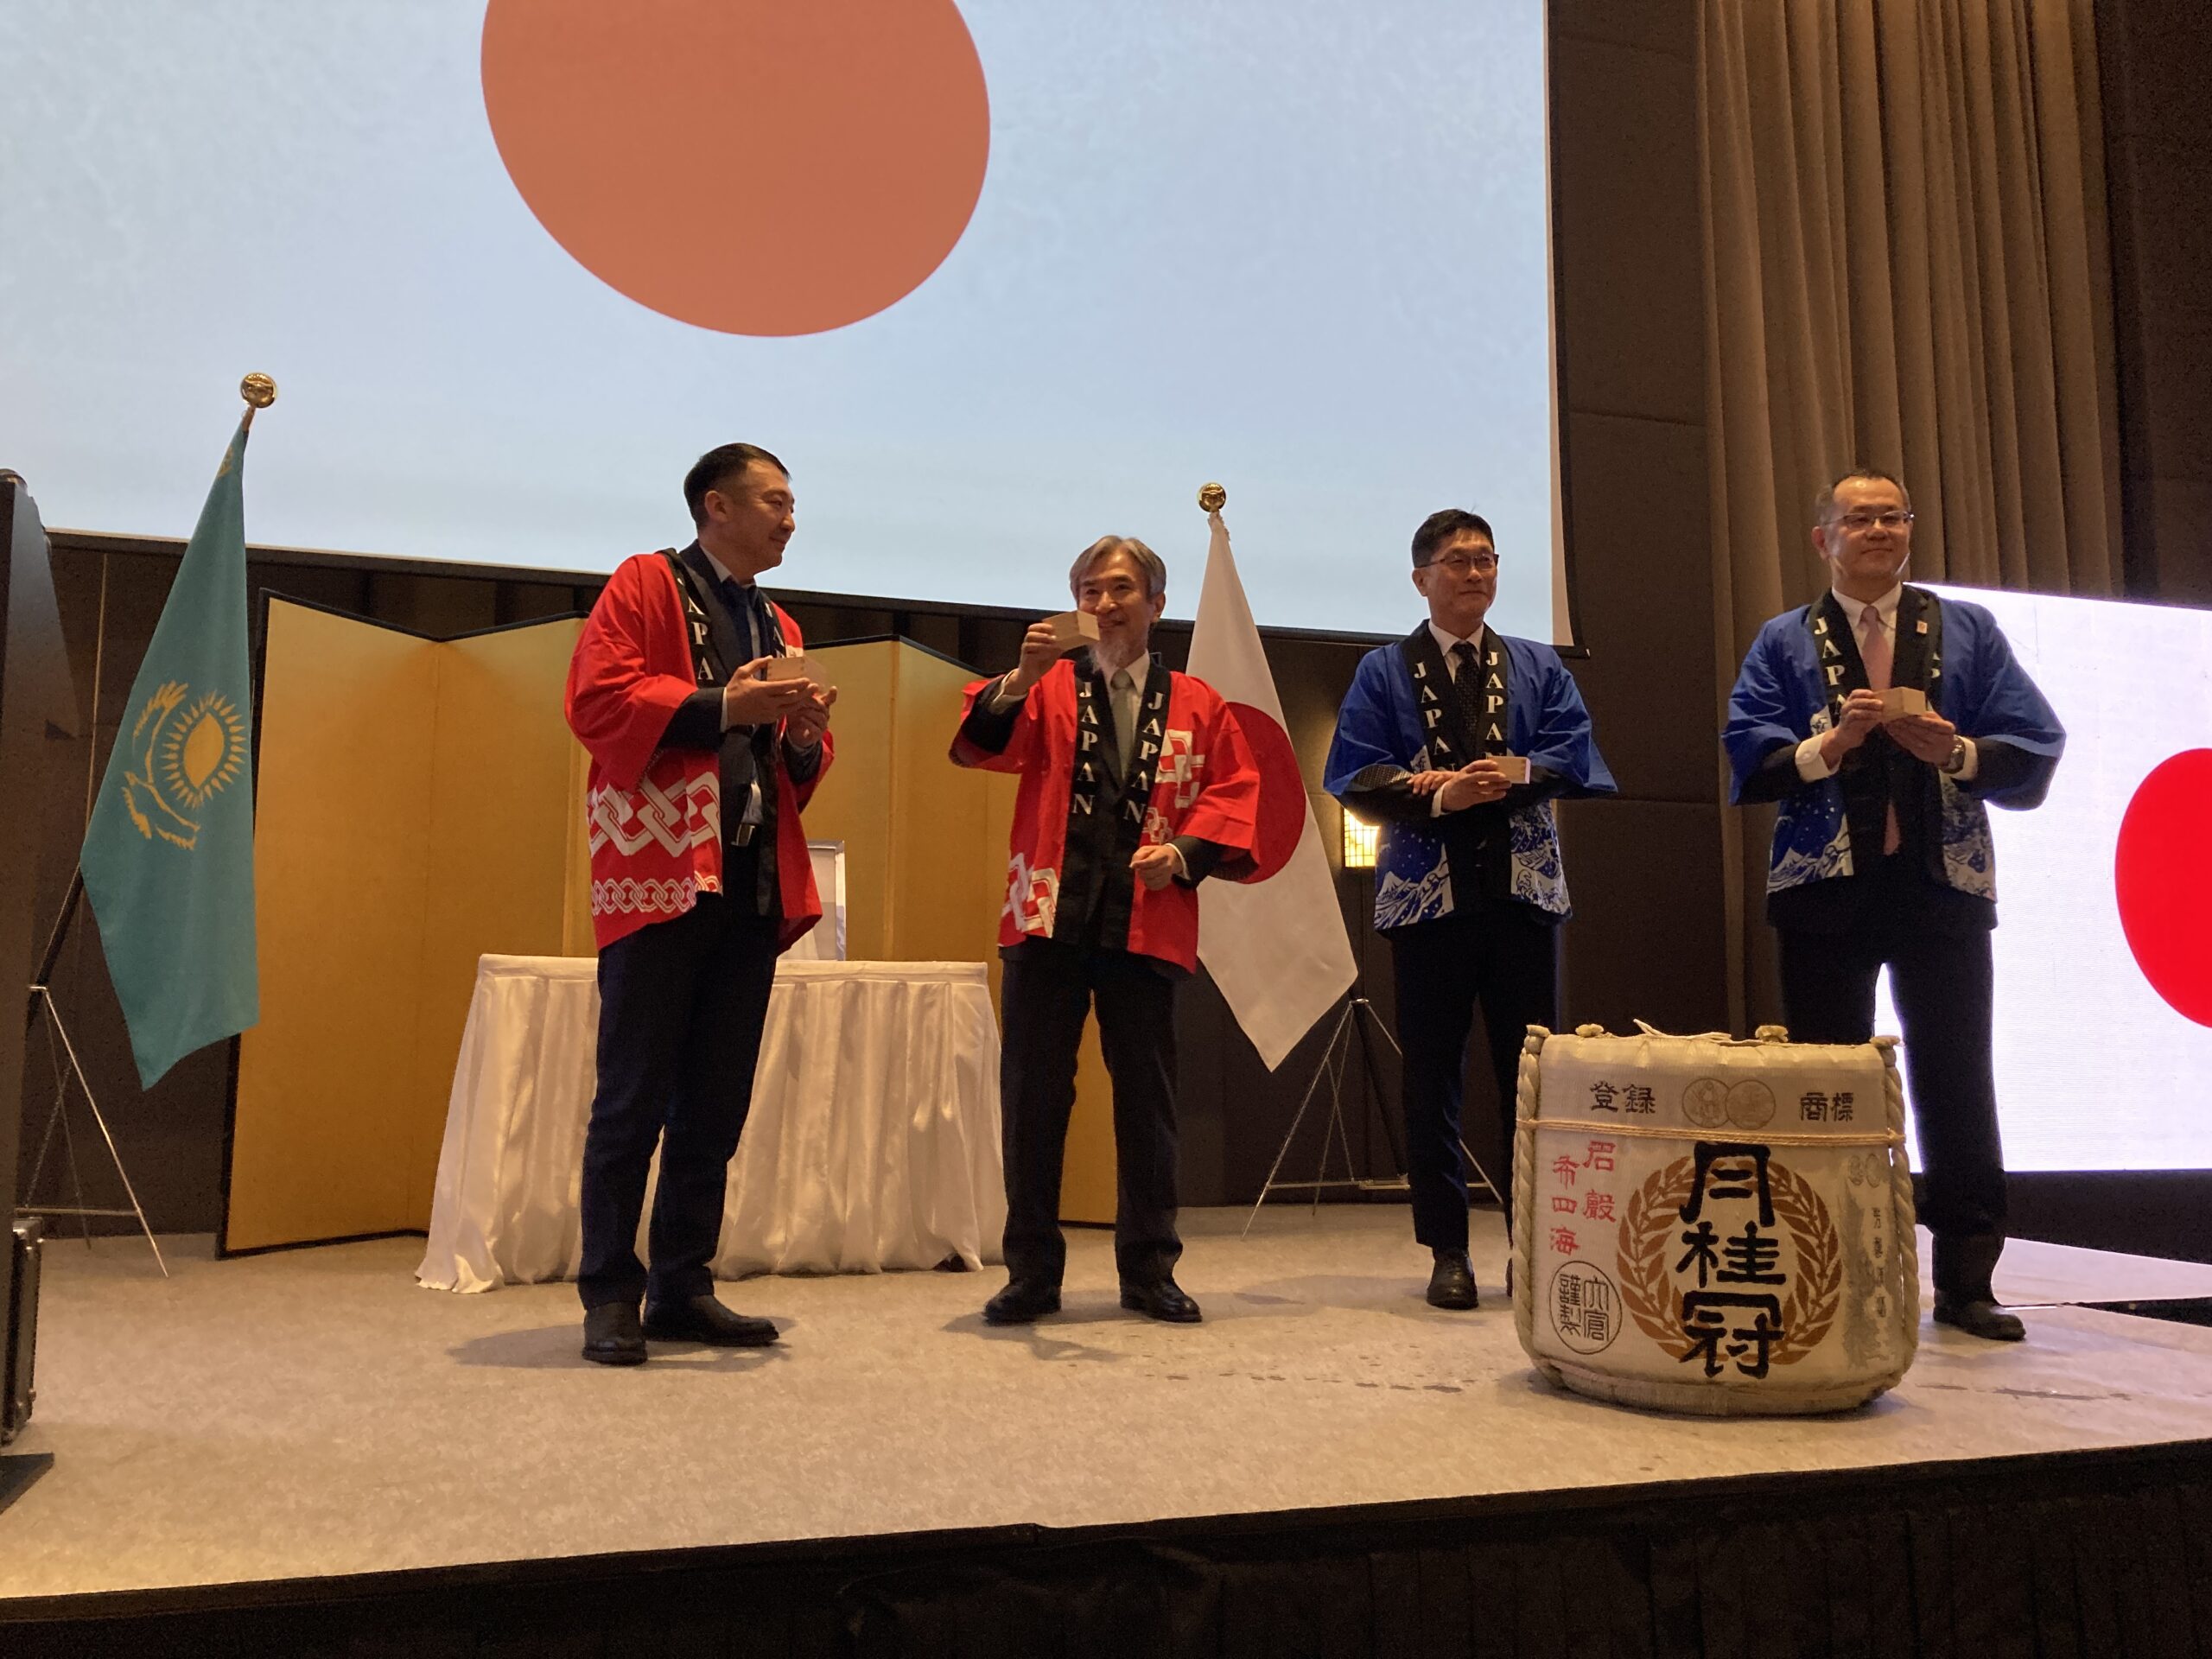 Гости наблюдали за традиционной церемонией Карагами Вари по разбиванию крышки бочки с саке (японский алкогольный напиток). Фото предоставлено пресс-службой Посольства Японии в Казахстане.